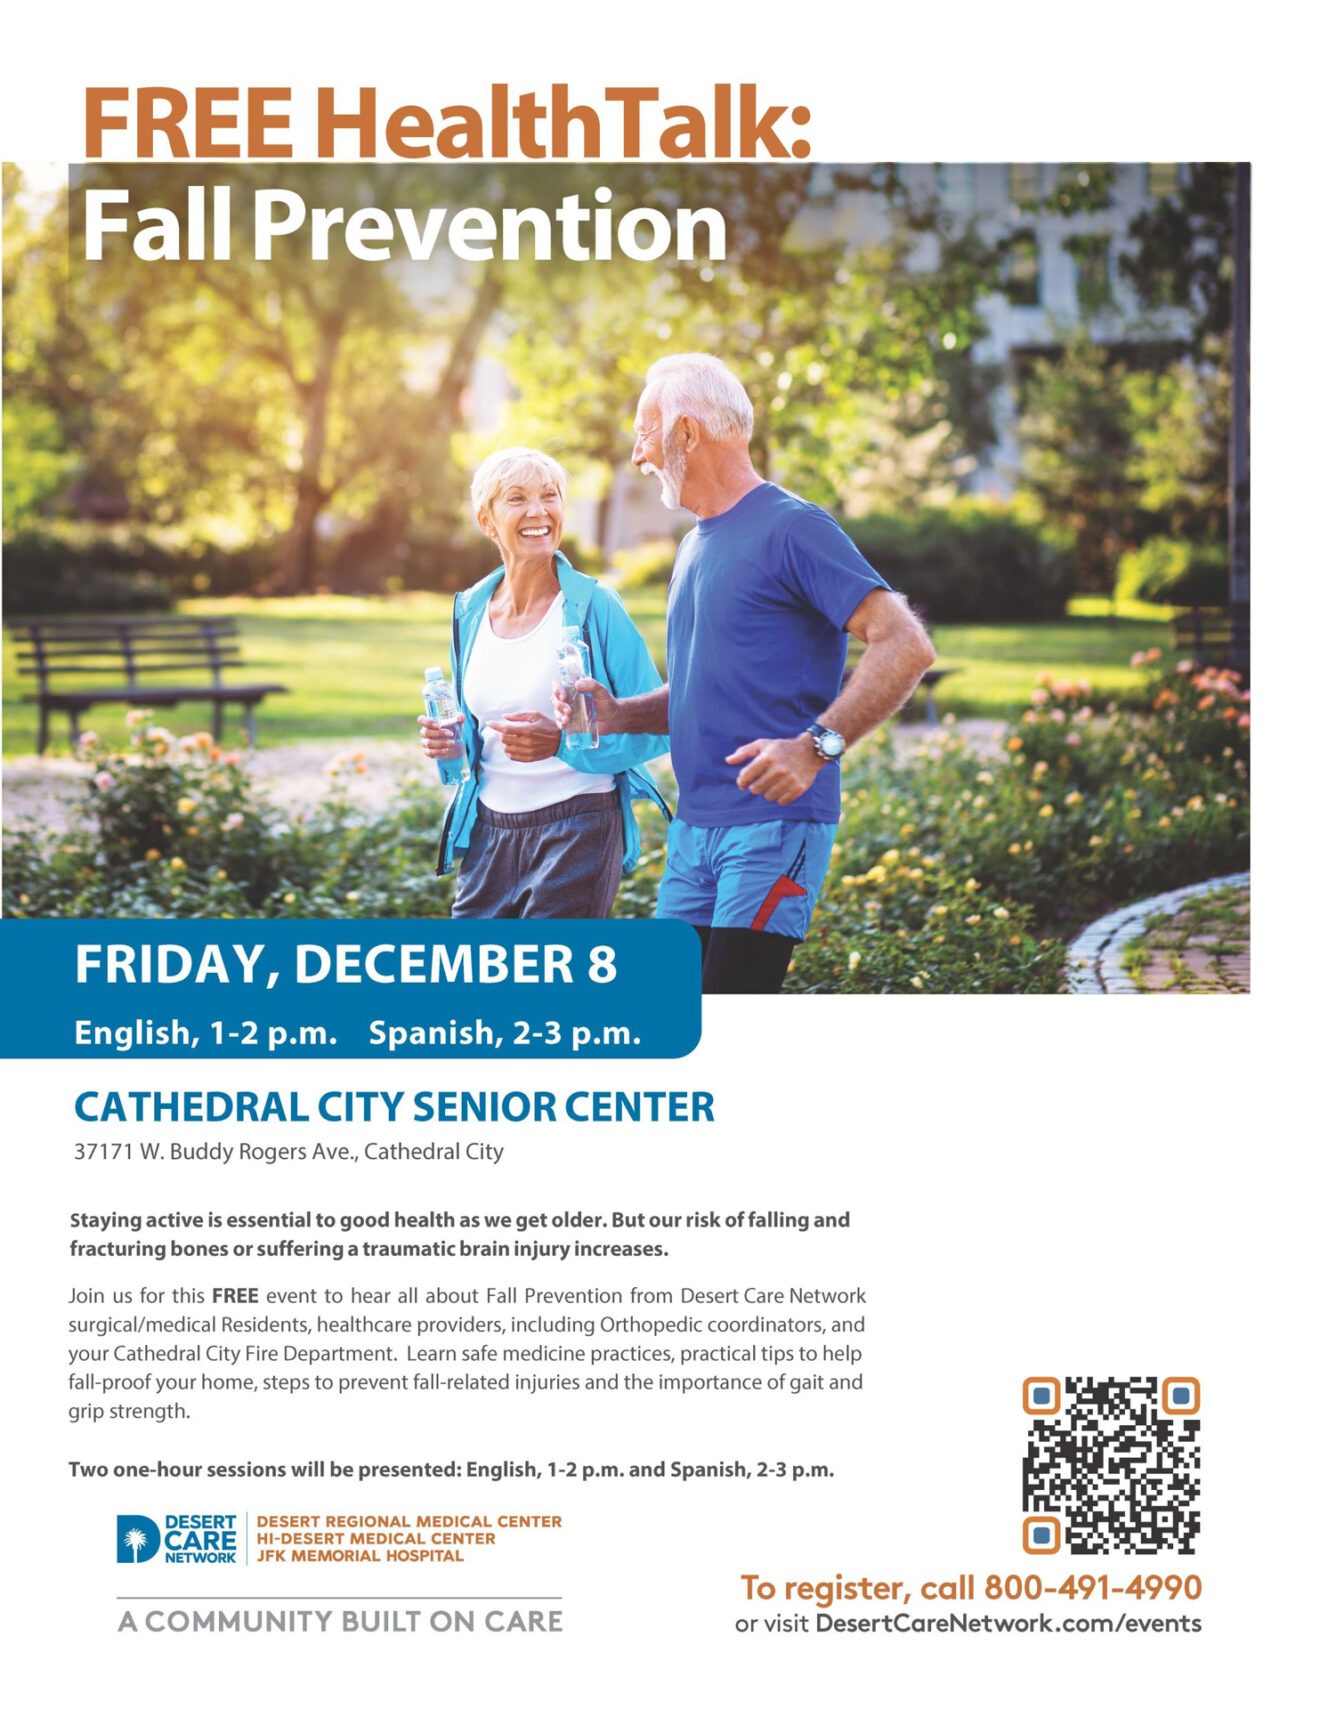 Fall Prevention Symposium